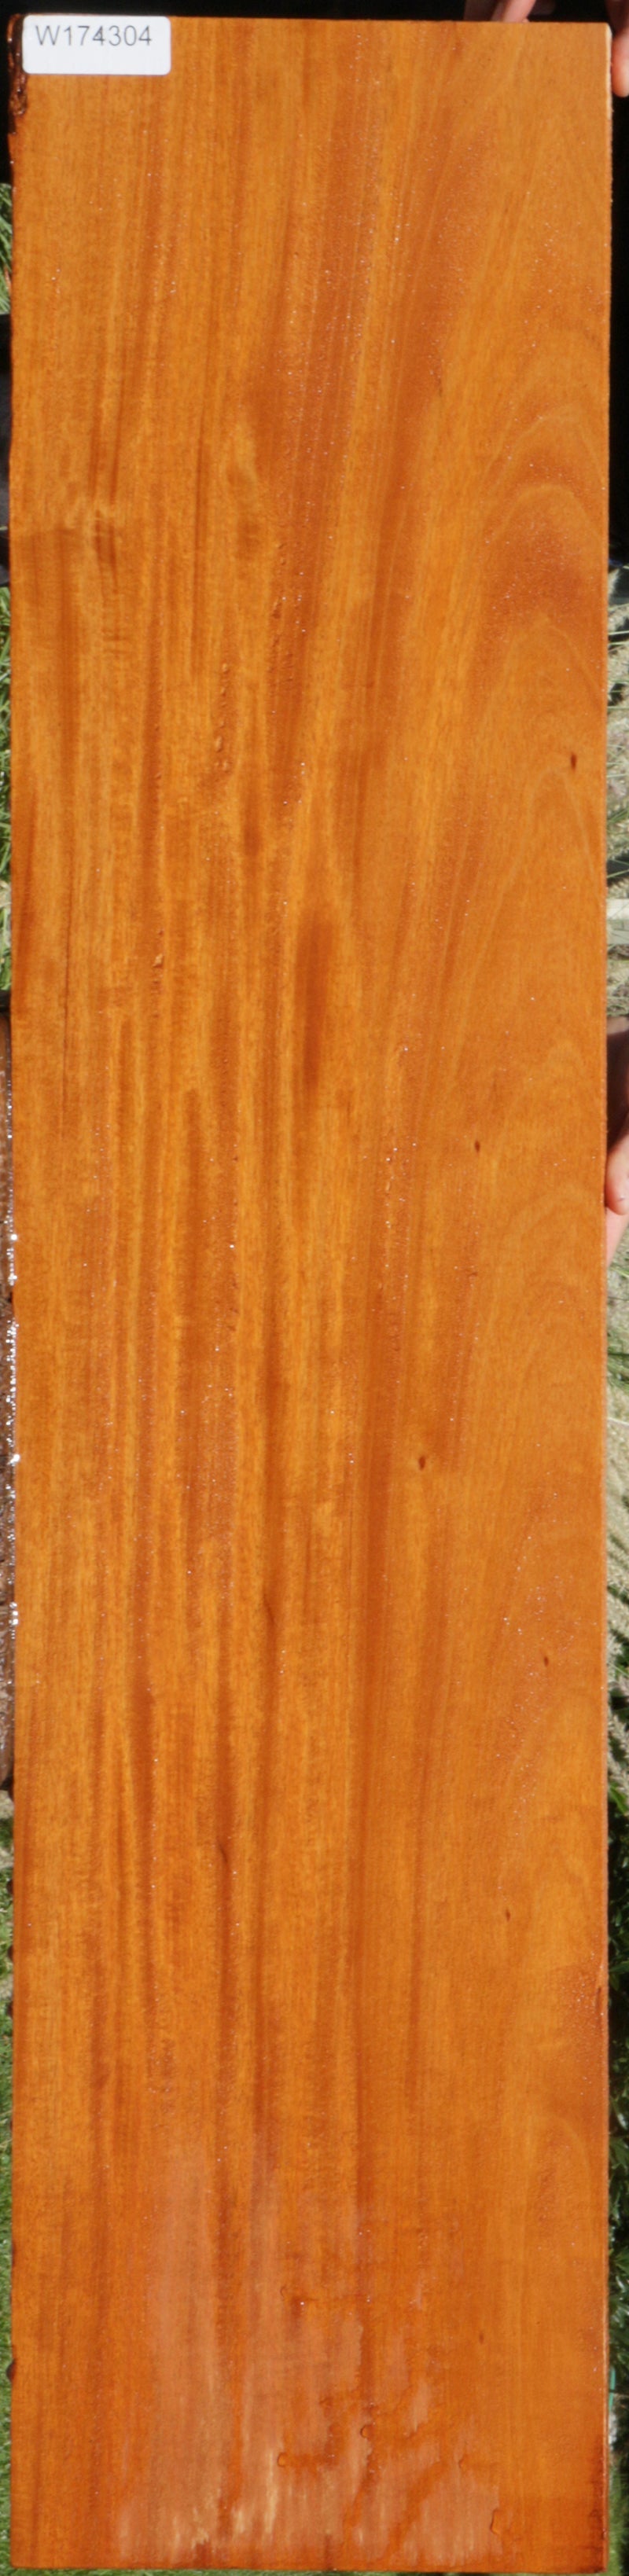 Extra Fancy Ribbon Honduras Mahogany Lumber